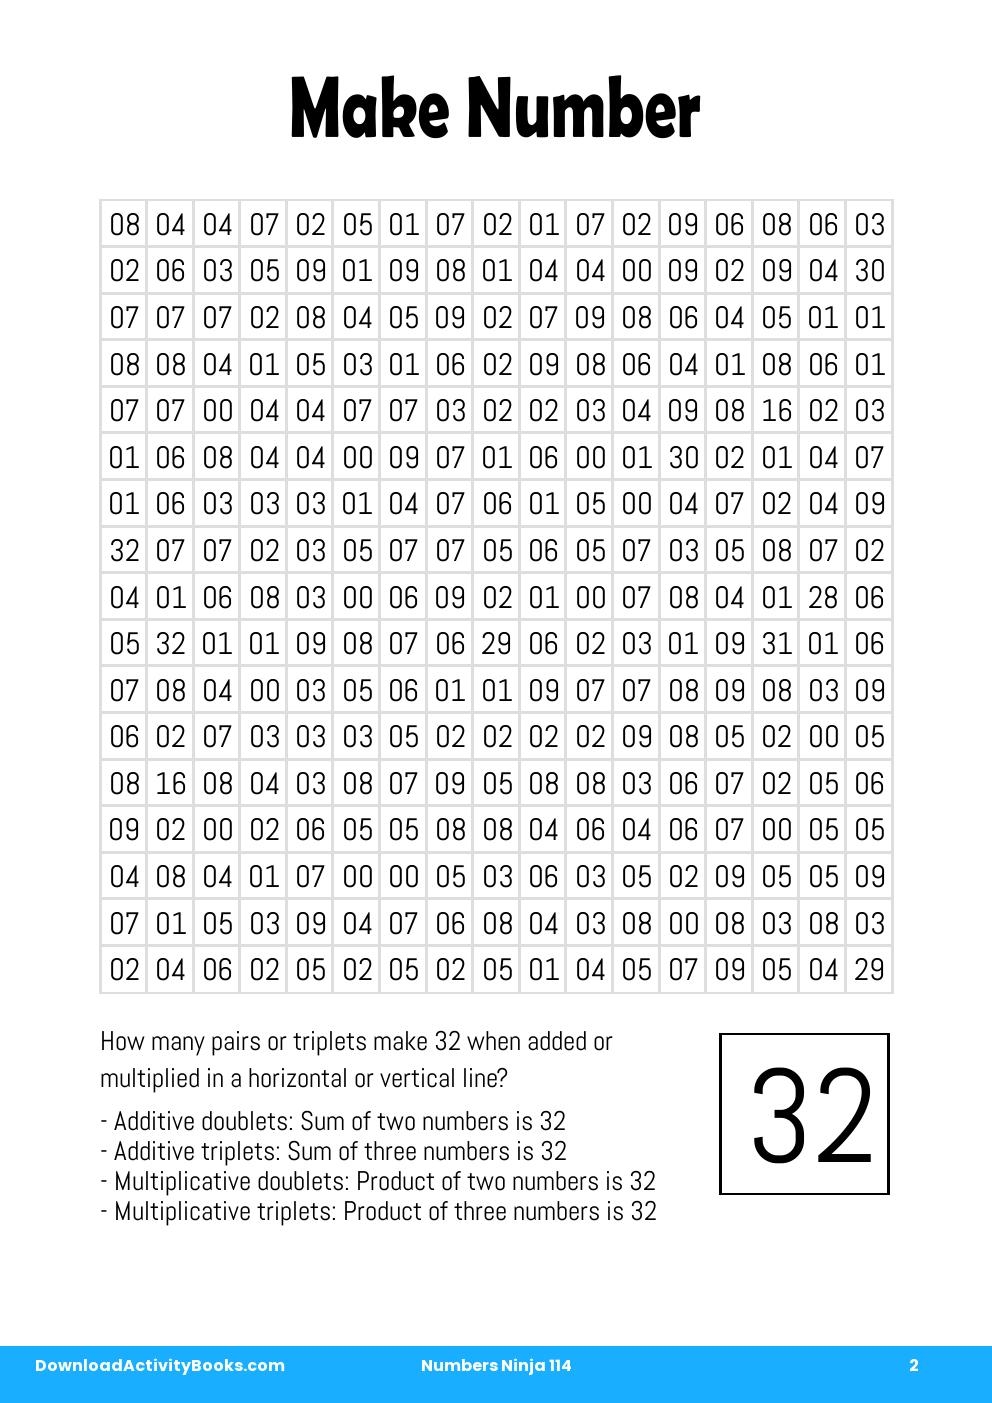 Make Number in Numbers Ninja 114